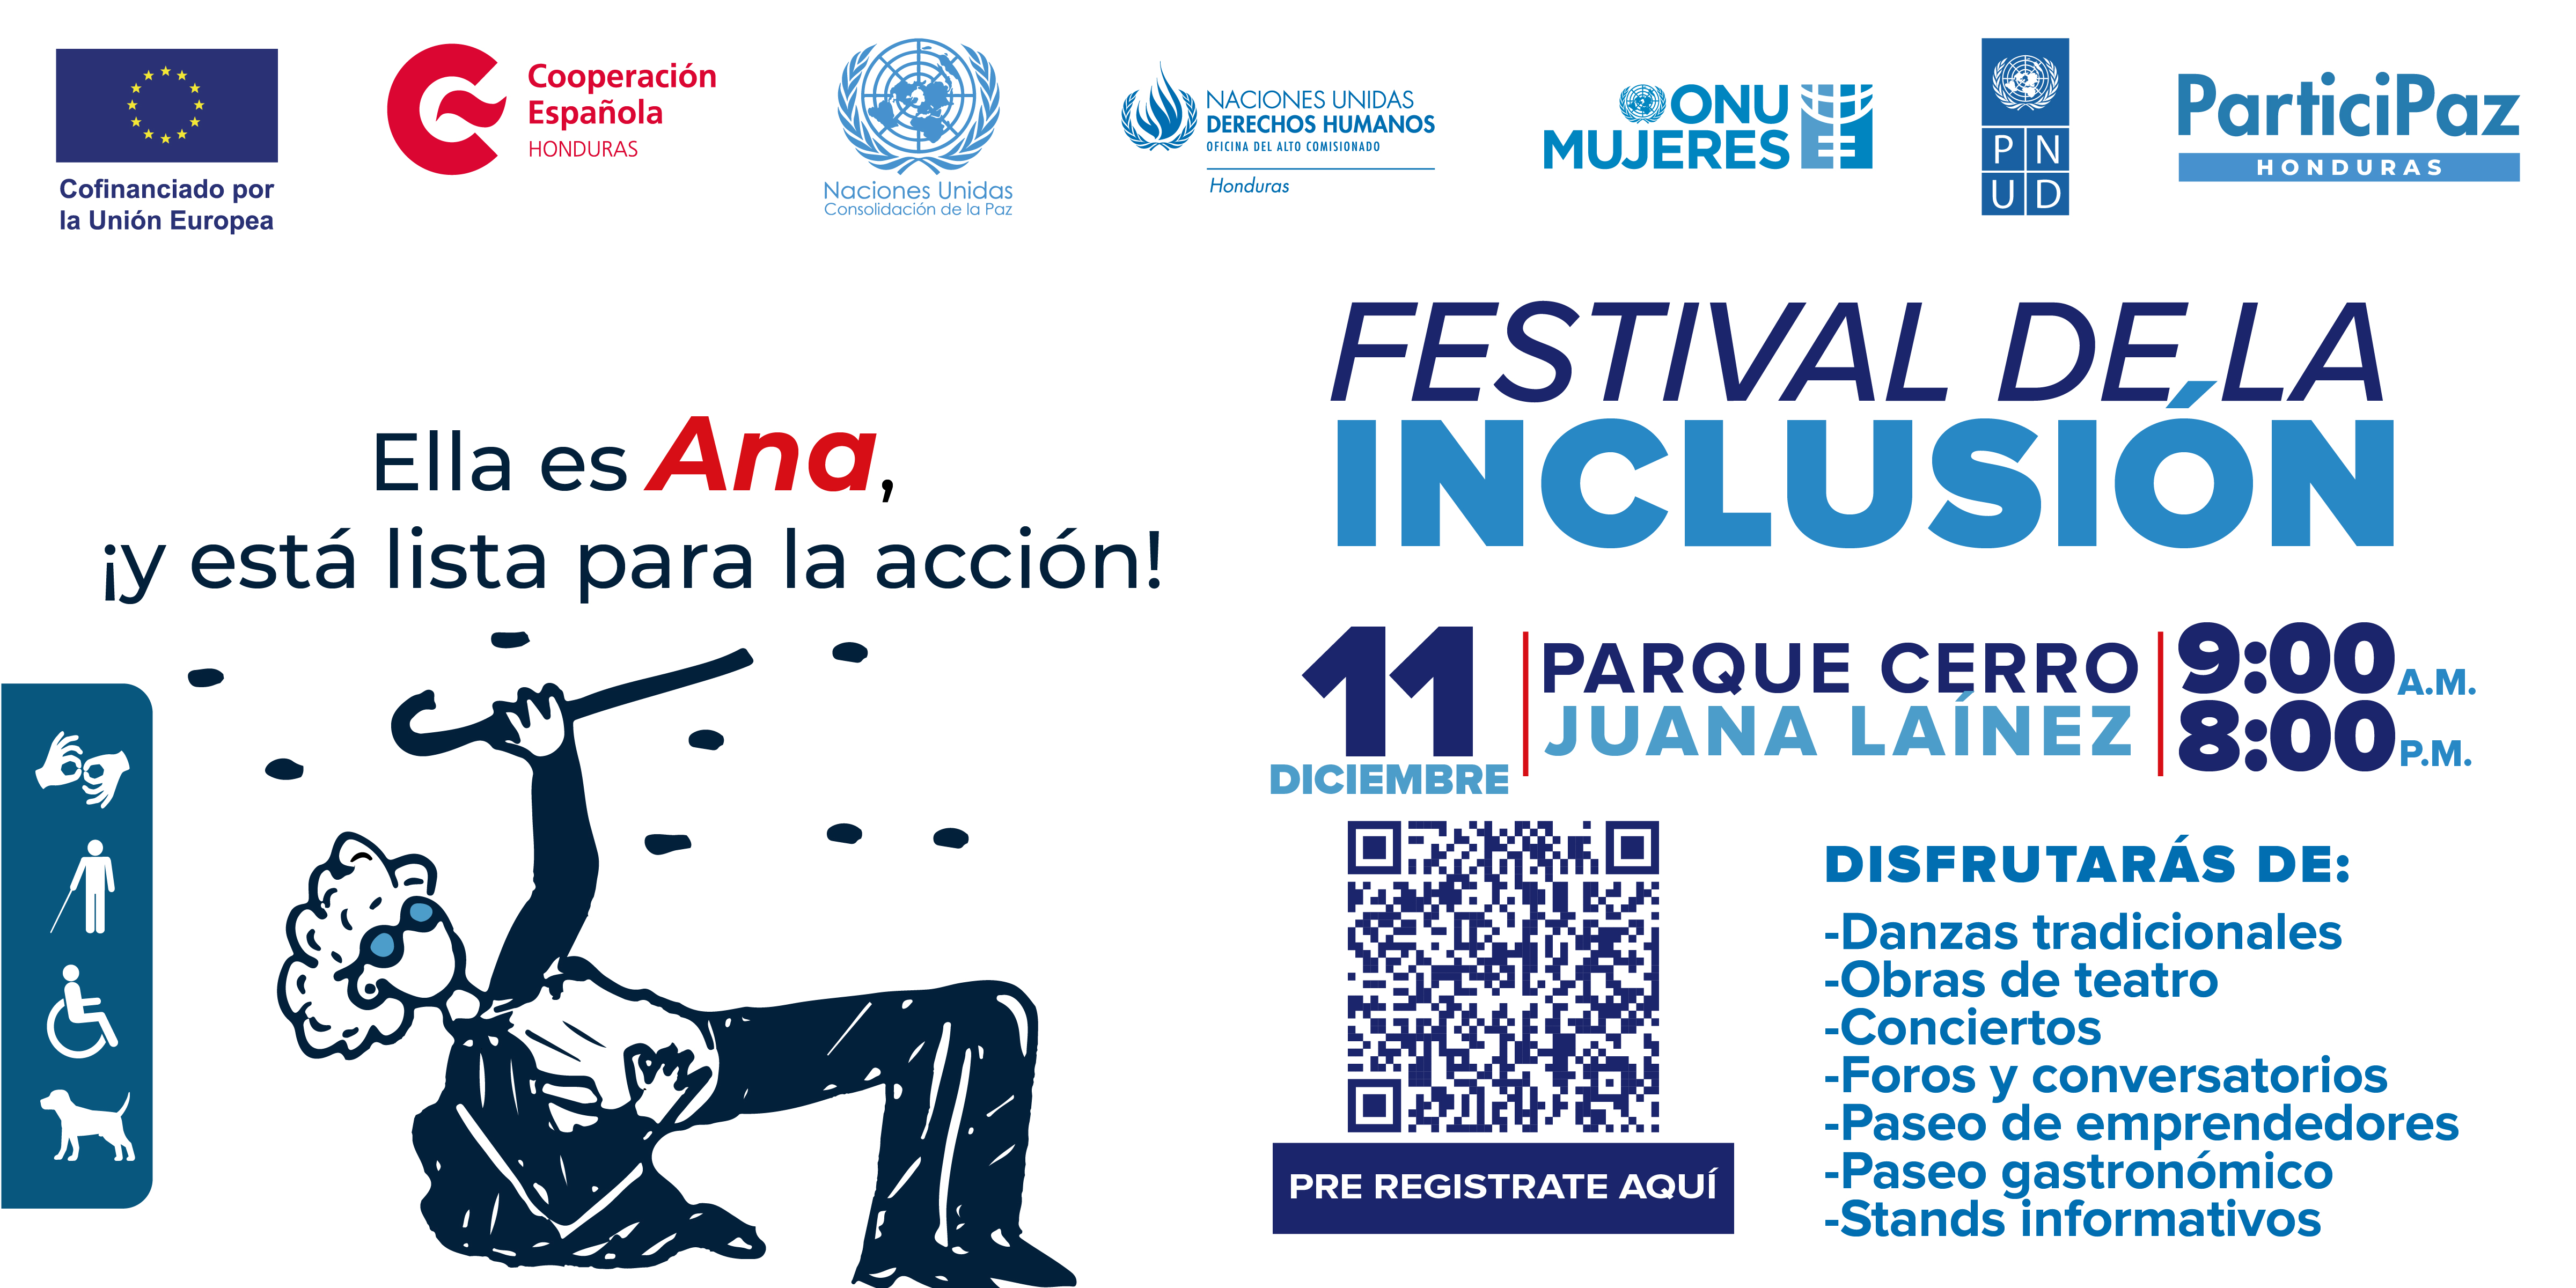 Invitación al Festival de la Inclusión el 11 de diciembre 2022 en Tegucigalpa